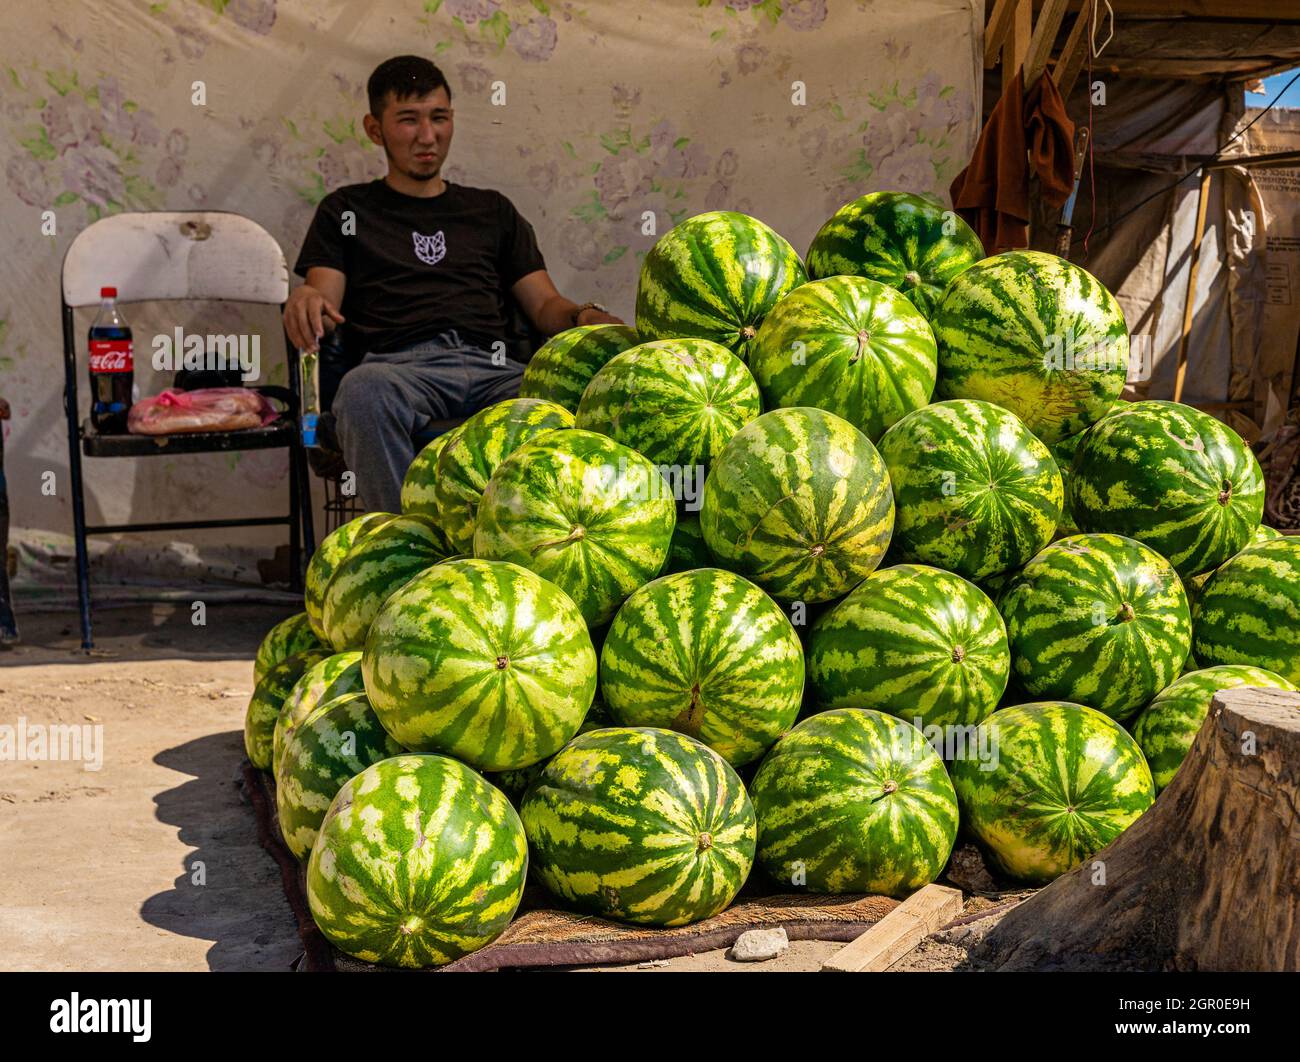 Kasachischer Mann, der Wassermelonen am Boden auf dem saisonalen Outdoor-Markt in Kyzyl-Orda, Kasachstan, Zentral- und Asien verkauft Stockfoto